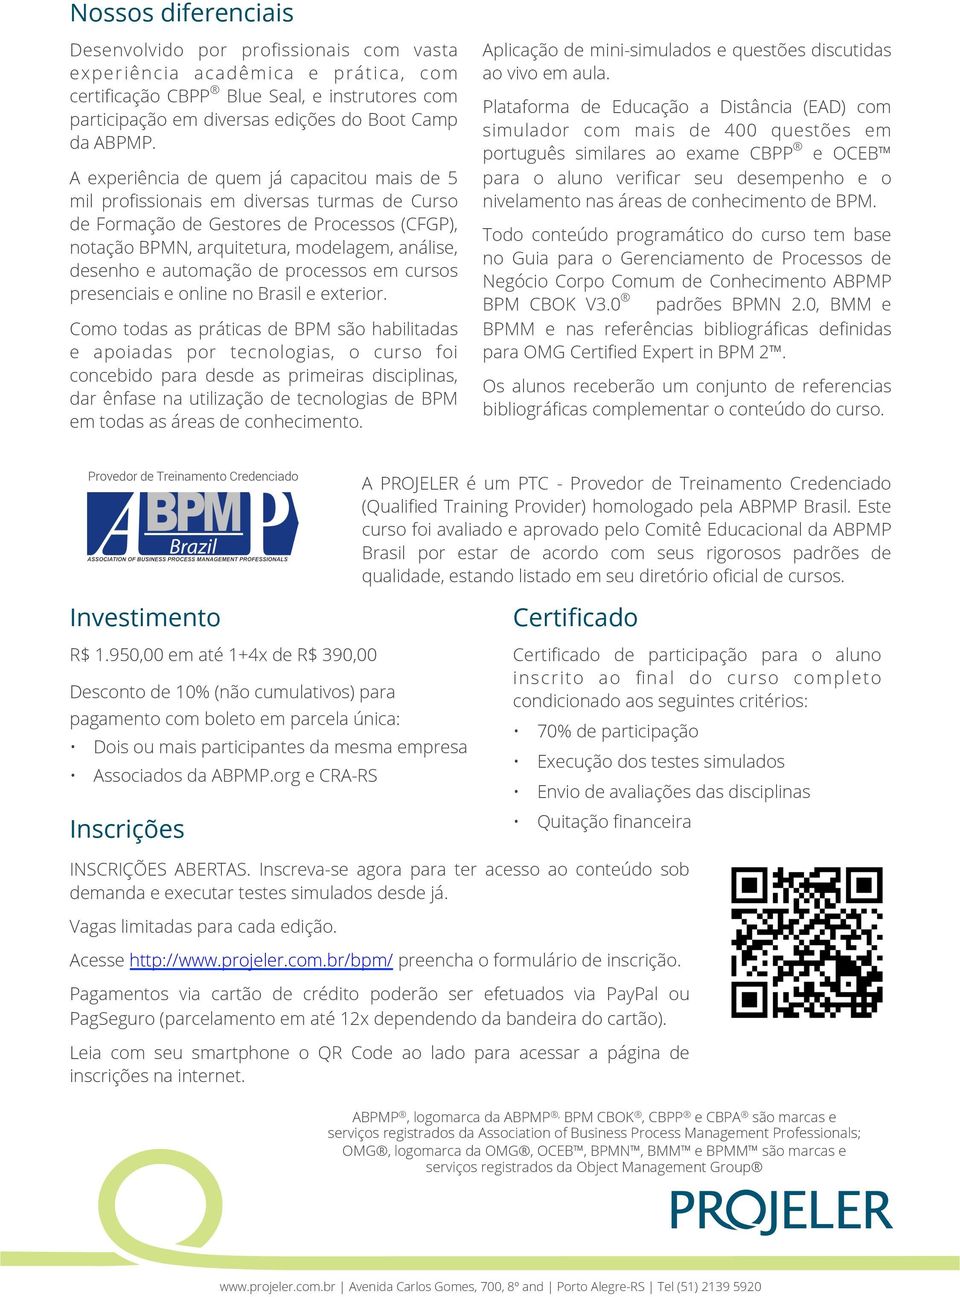 automação de processos em cursos presenciais e online no Brasil e exterior.